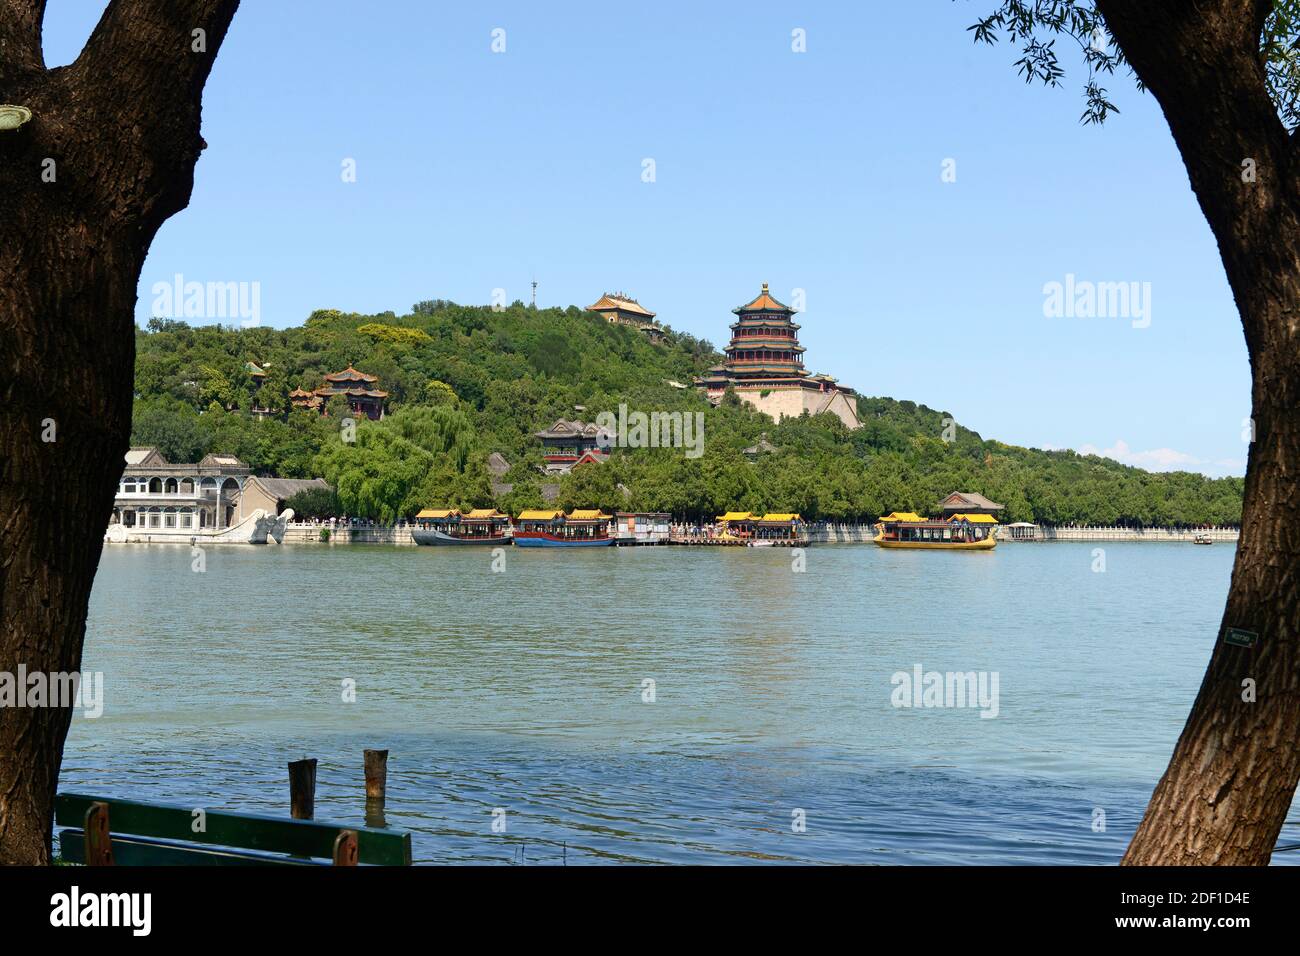 Vea a través del lago Kunming en el Palacio de Verano en Beijing, China, con la Torre de Incienso Budista, Foxiangge, prominente. Foto de stock